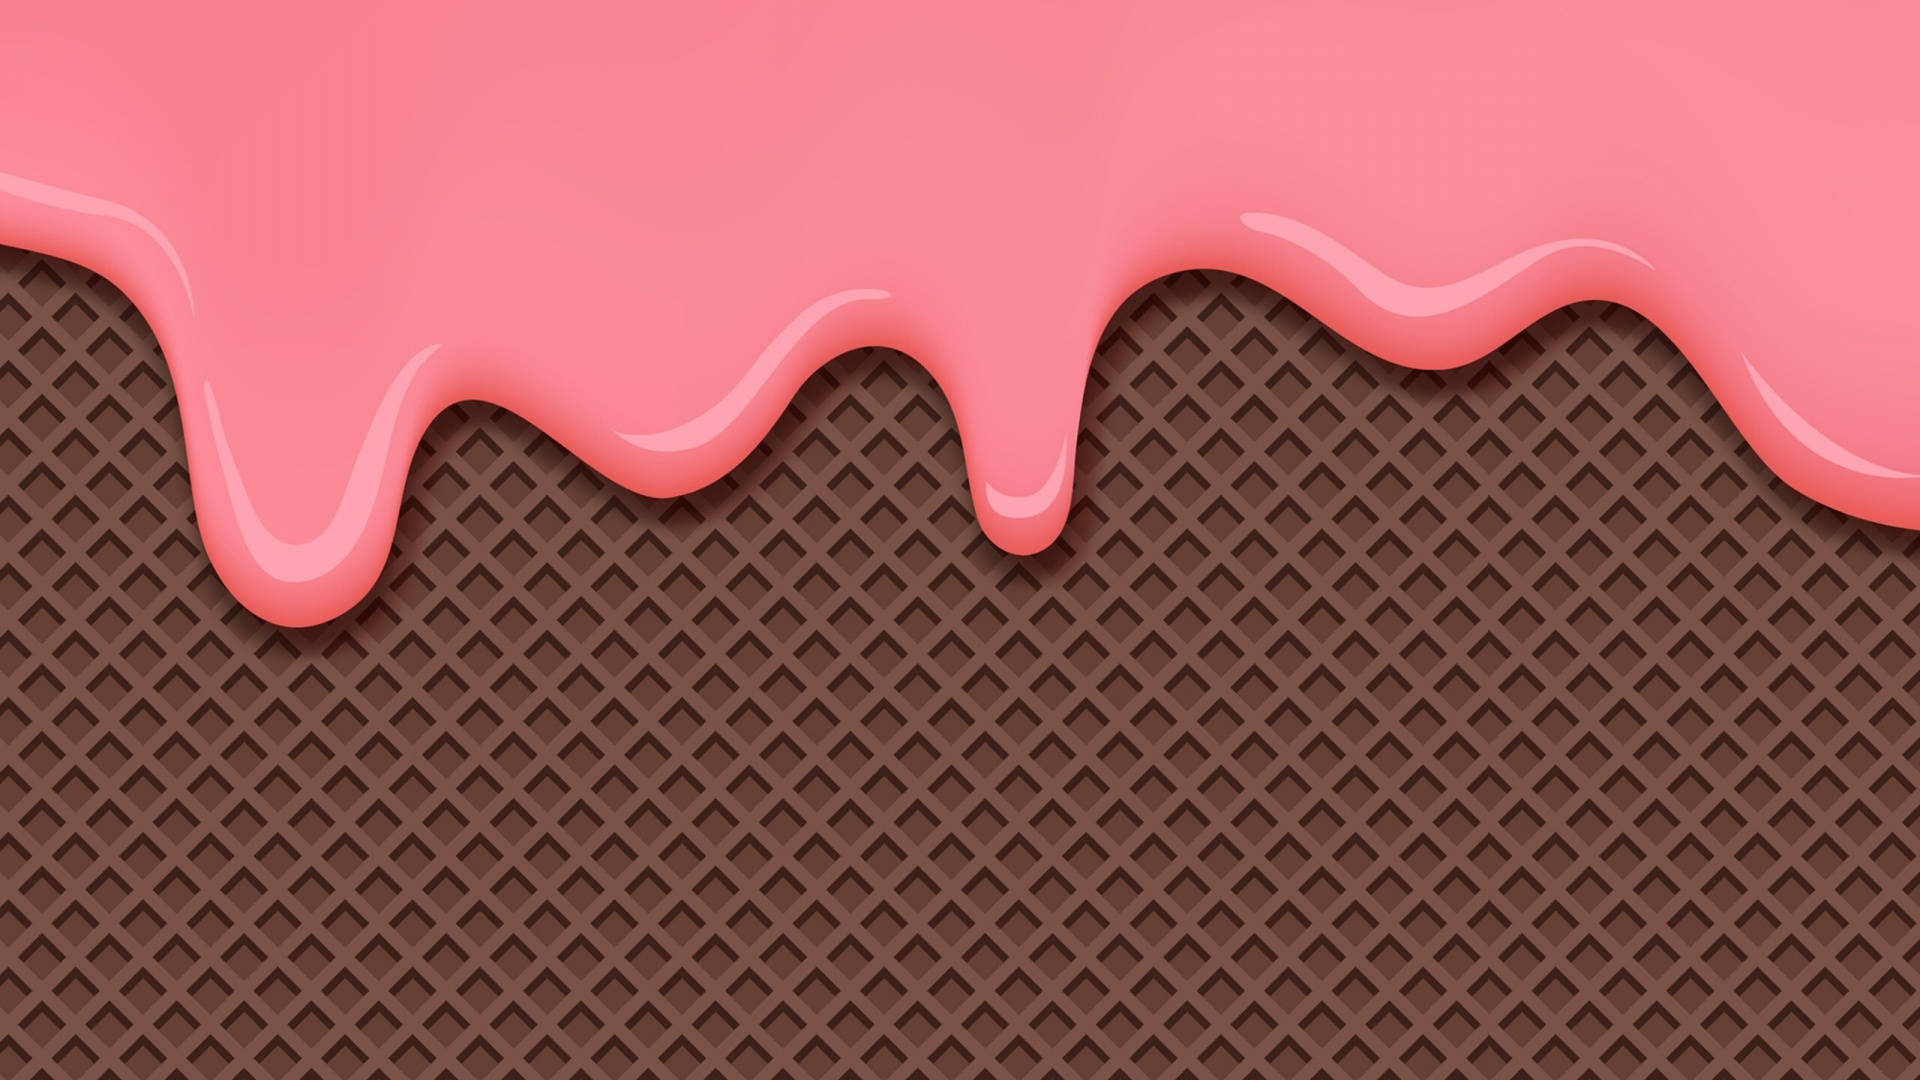 Drippy Aesthetic Ice Cream Background